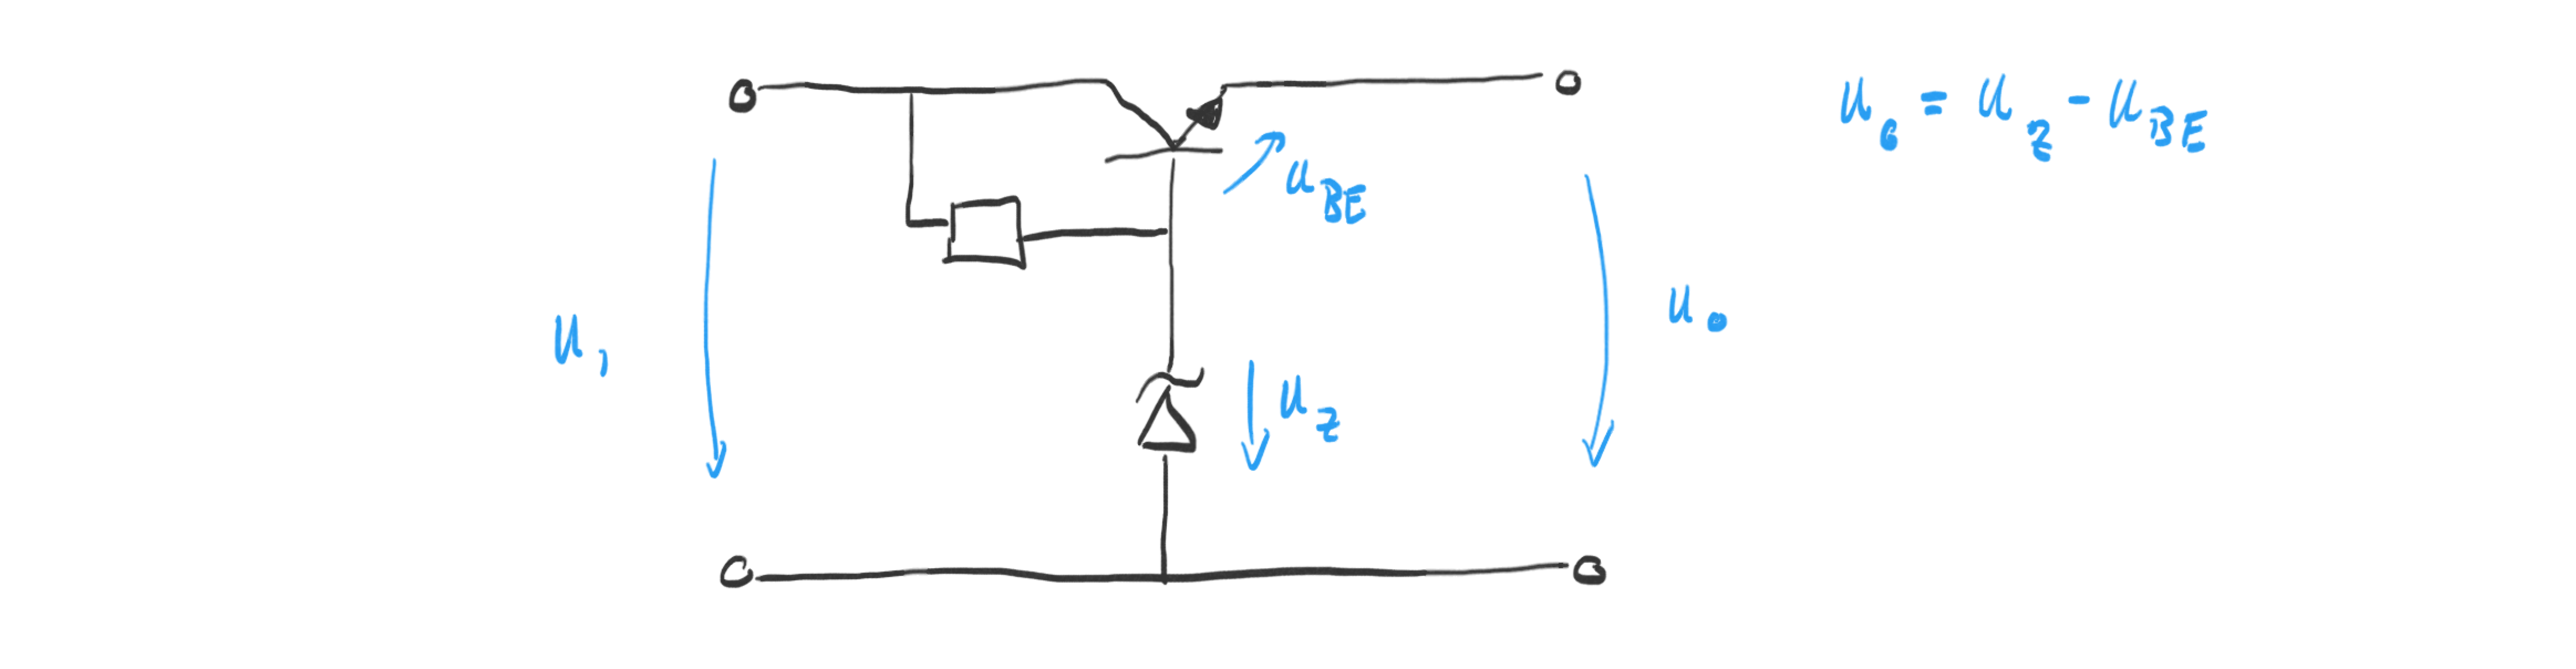 Transistor-based Voltage Source